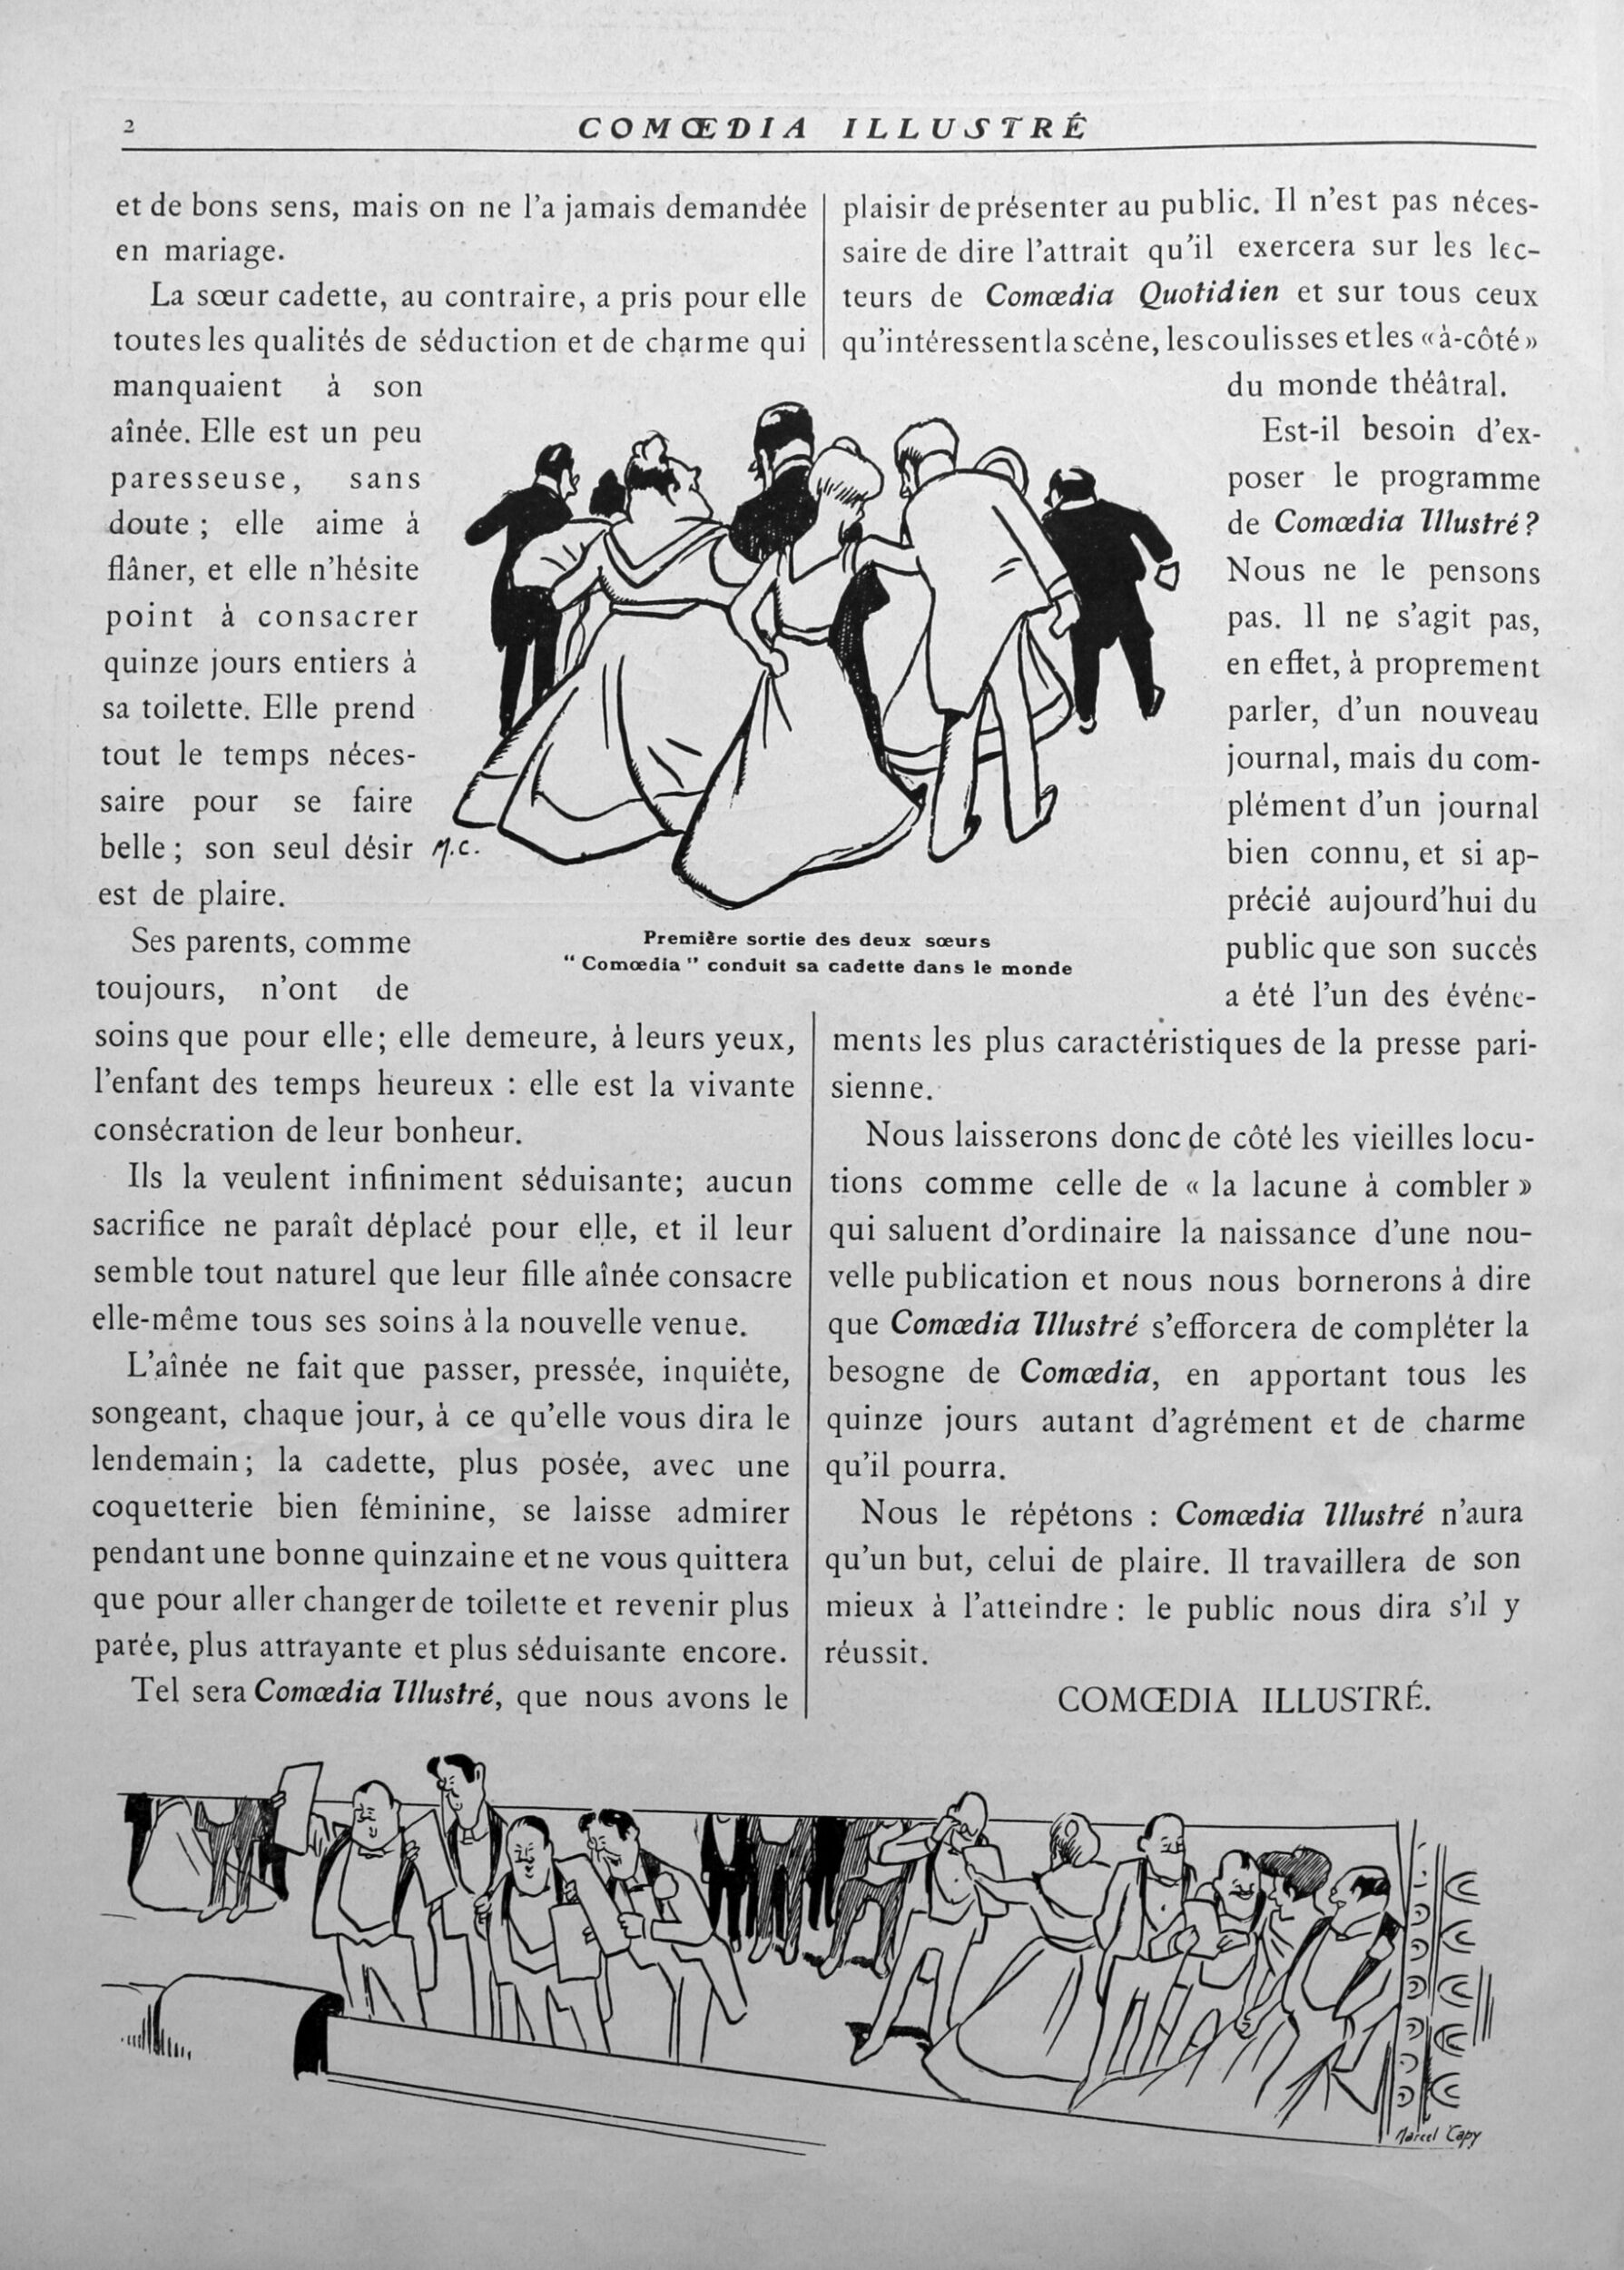 Comoedia illustré, 15 janvier 1909, p. 76